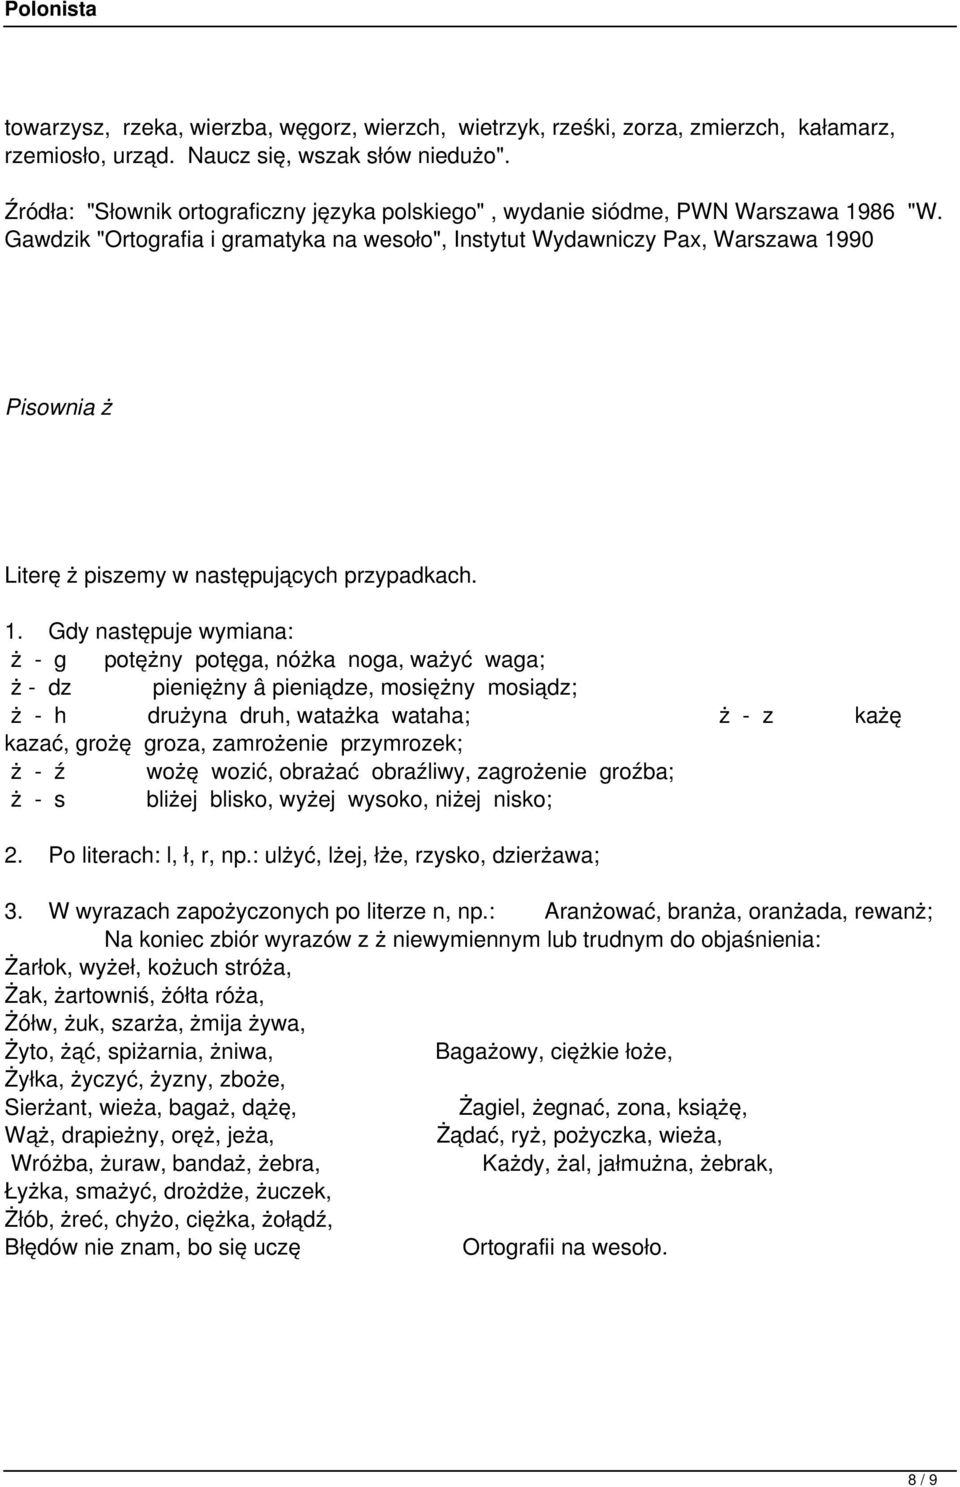 Gawdzik "Ortografia i gramatyka na wesoło", Instytut Wydawniczy Pax, Warszawa 19